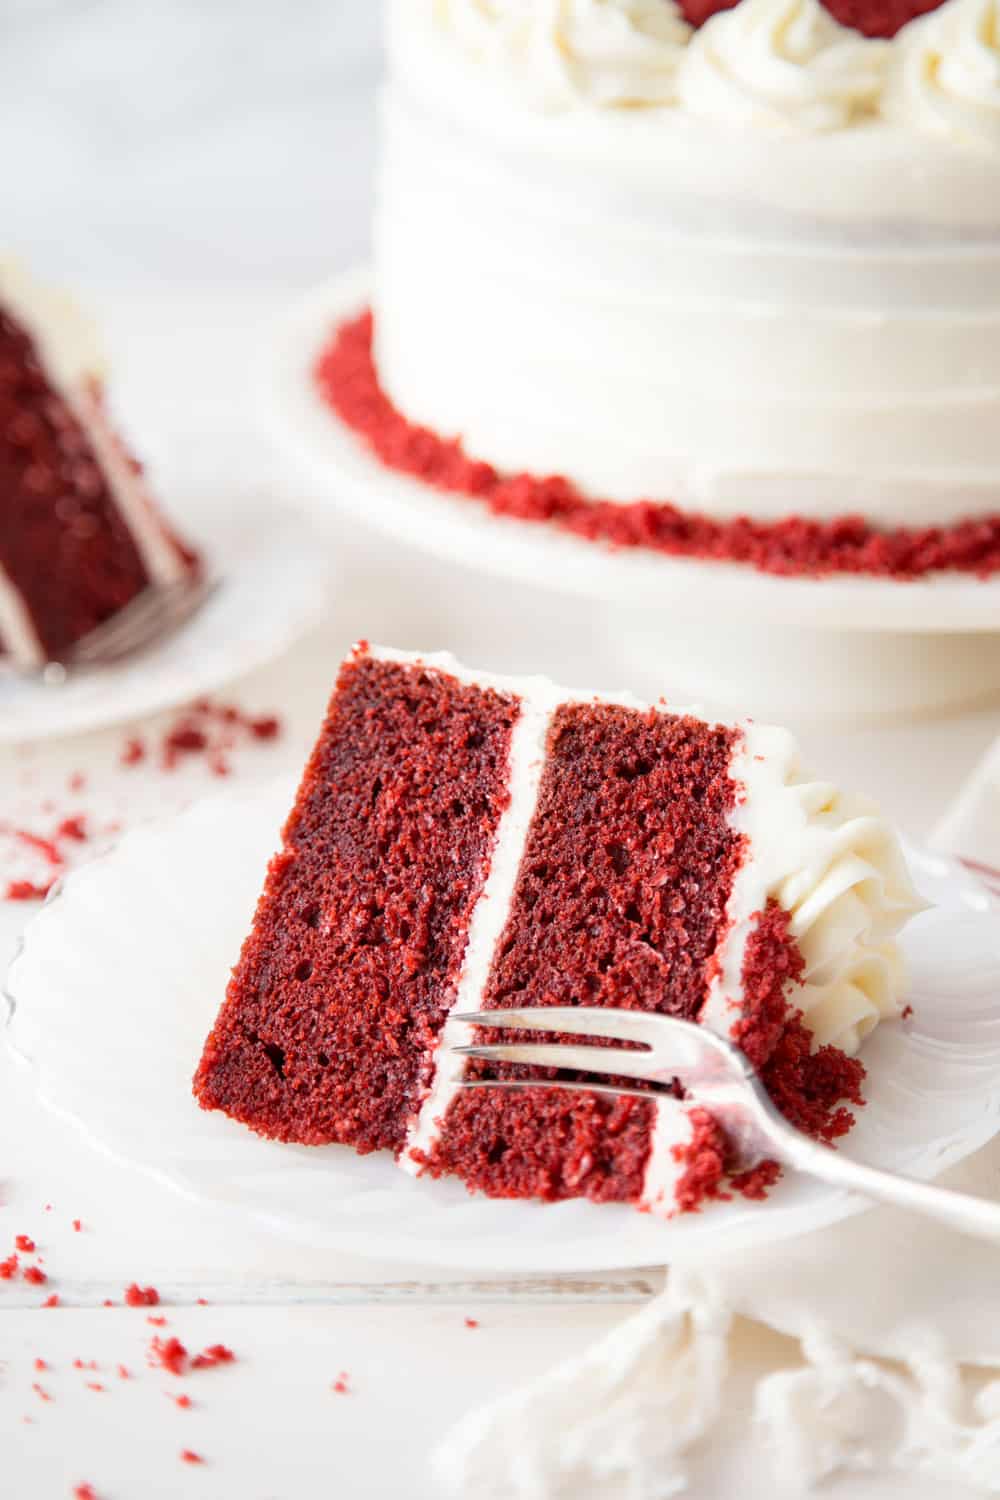 Red velvet cake on a plate